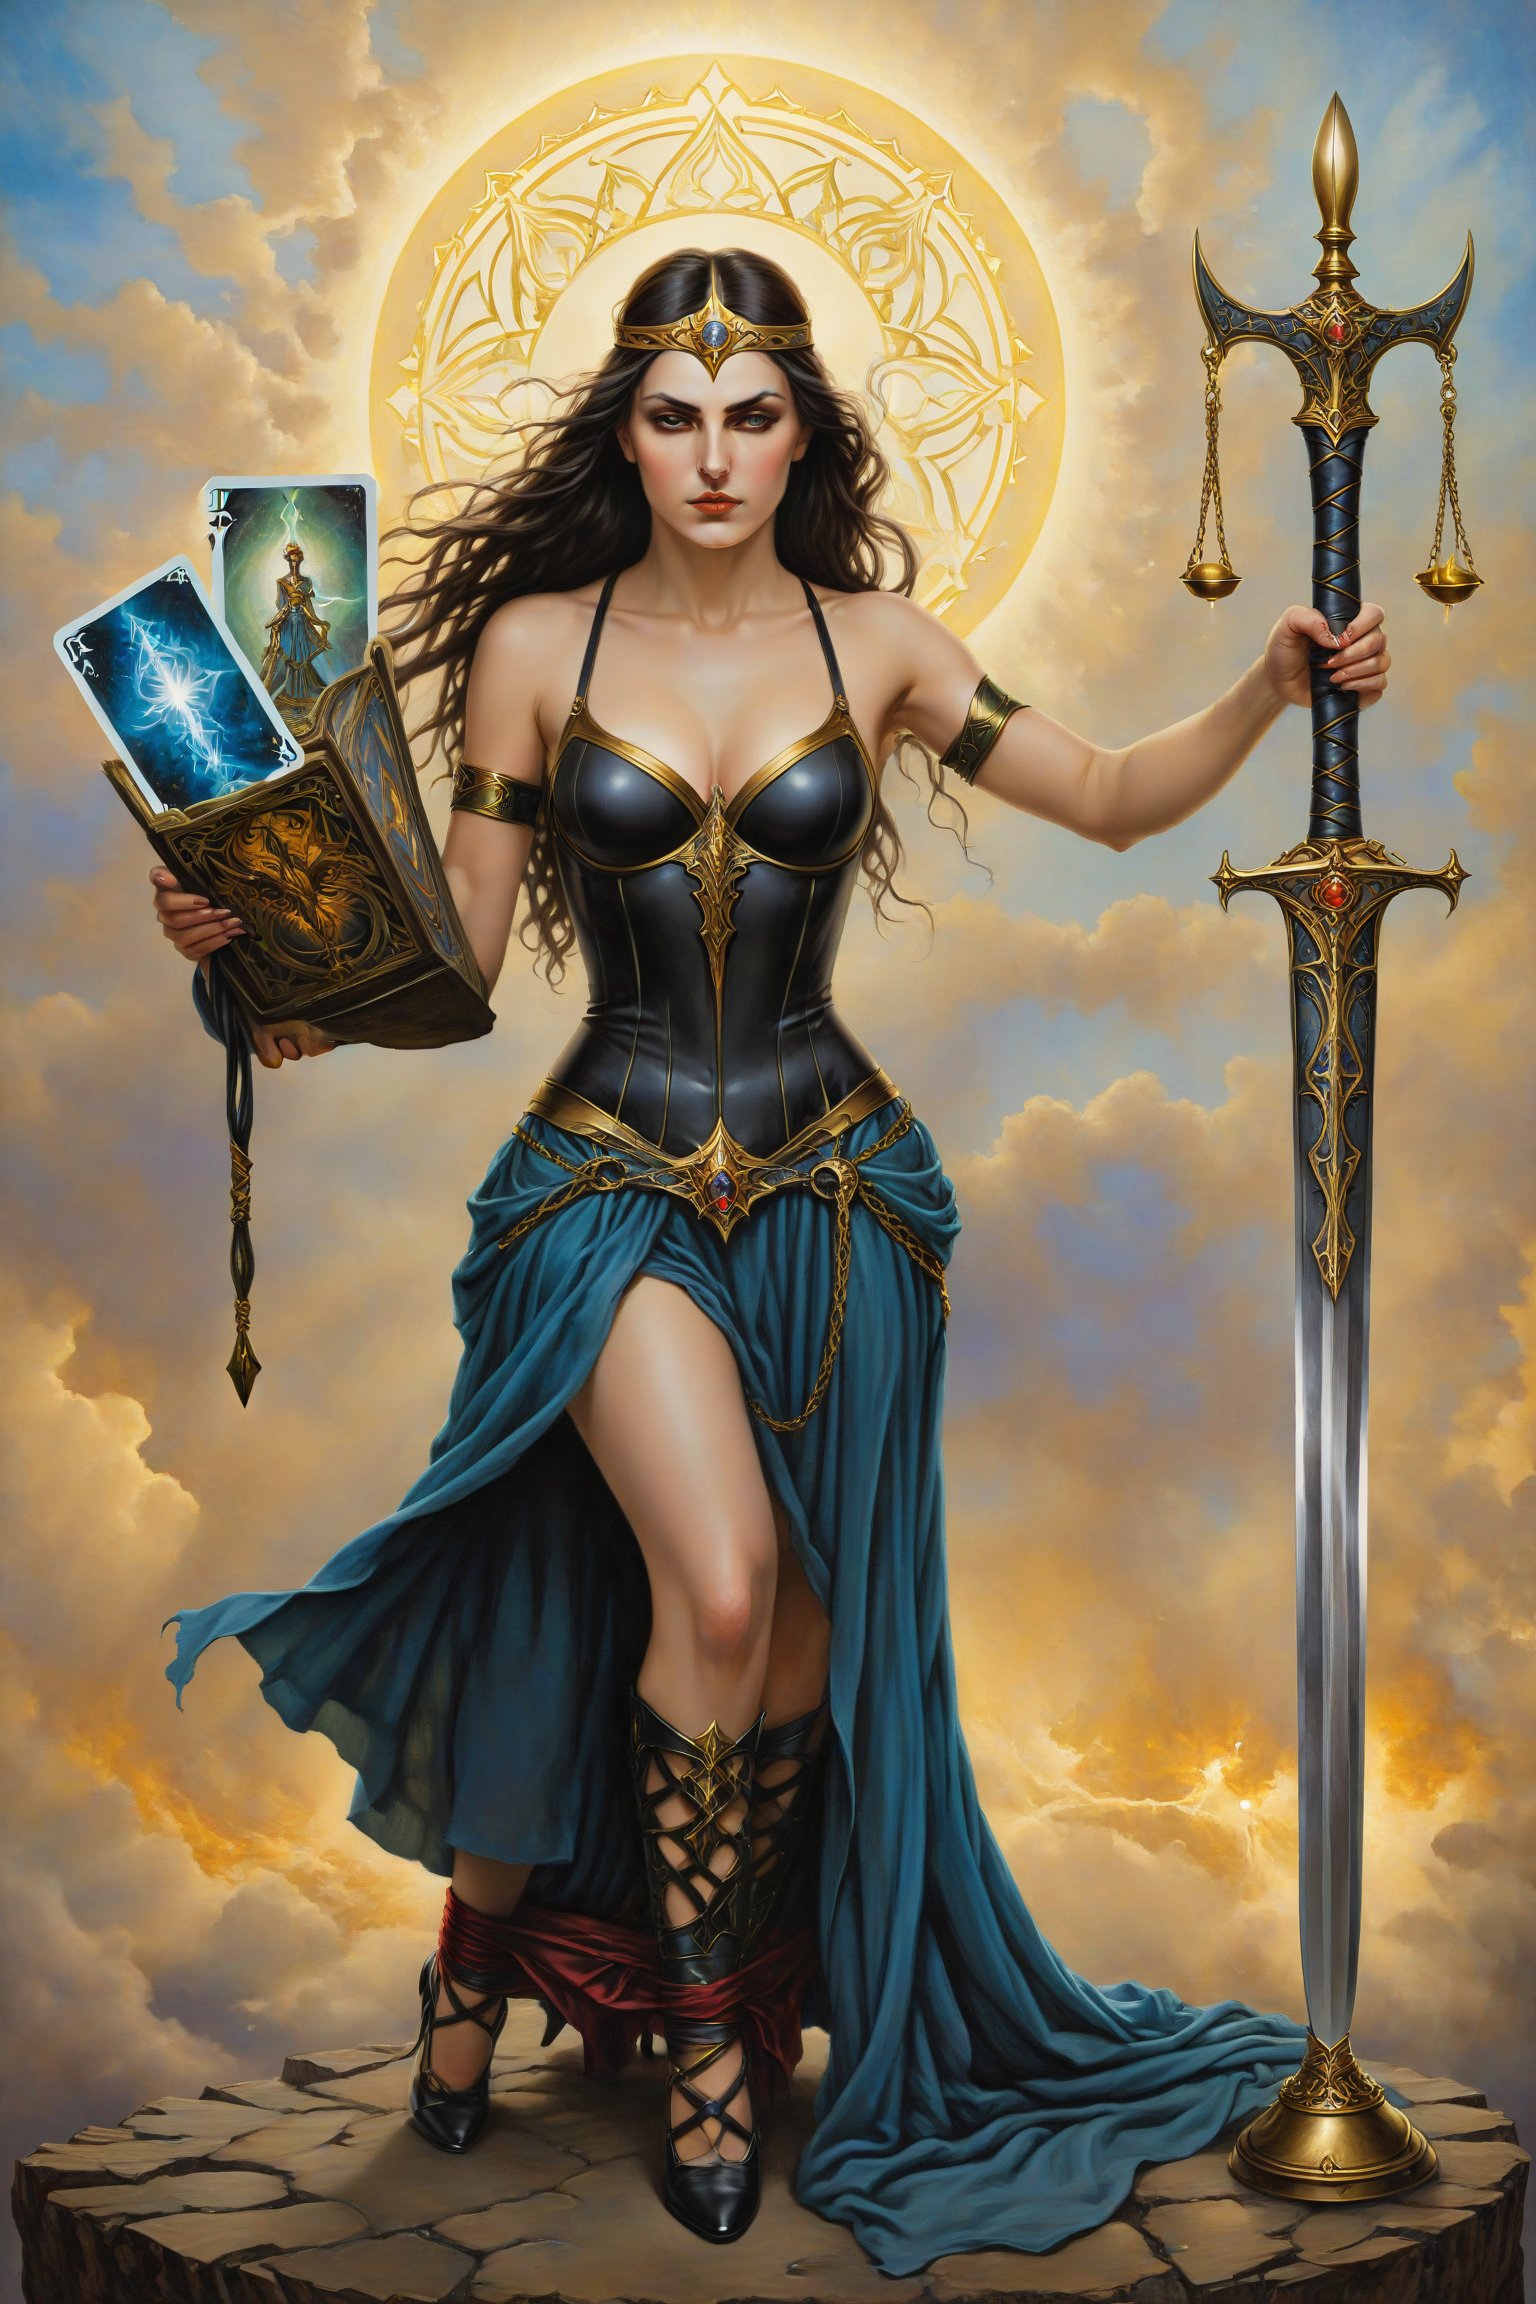 Justice card of tarot: Una figura femenina sentada con una balanza n equilibrio, en una mano y una espada en la otra, simbolizando equilibrio y verdad. artfrahm,visionary art style